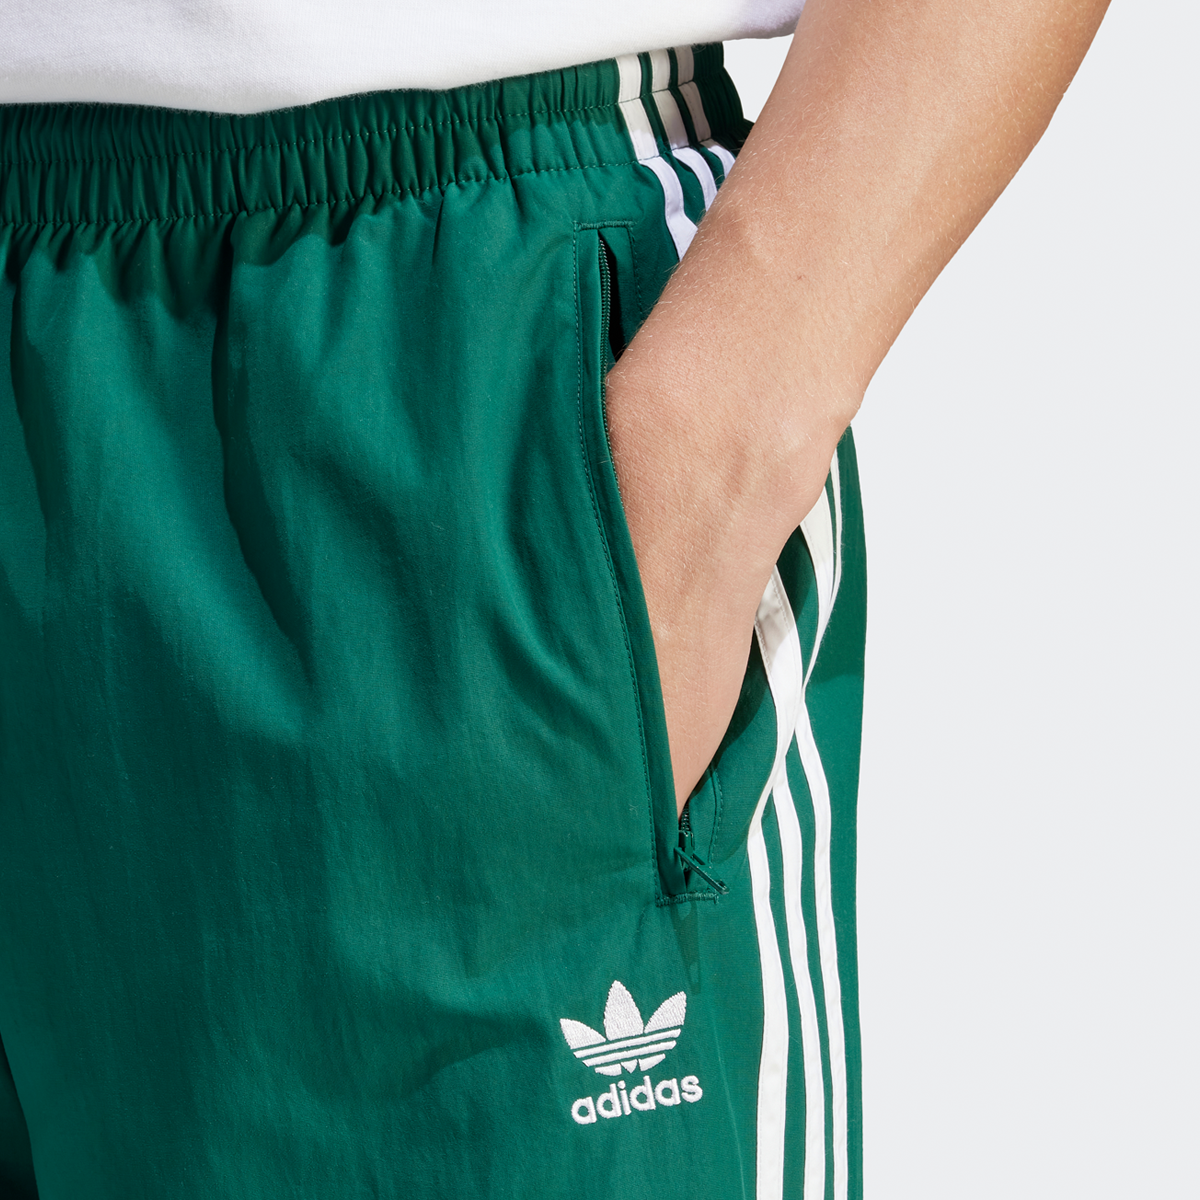 adidas Originals 3-stripes Woven Firebird Jogging Broek Trainingsbroeken Heren collegiate green maat: L beschikbare maaten:L XL